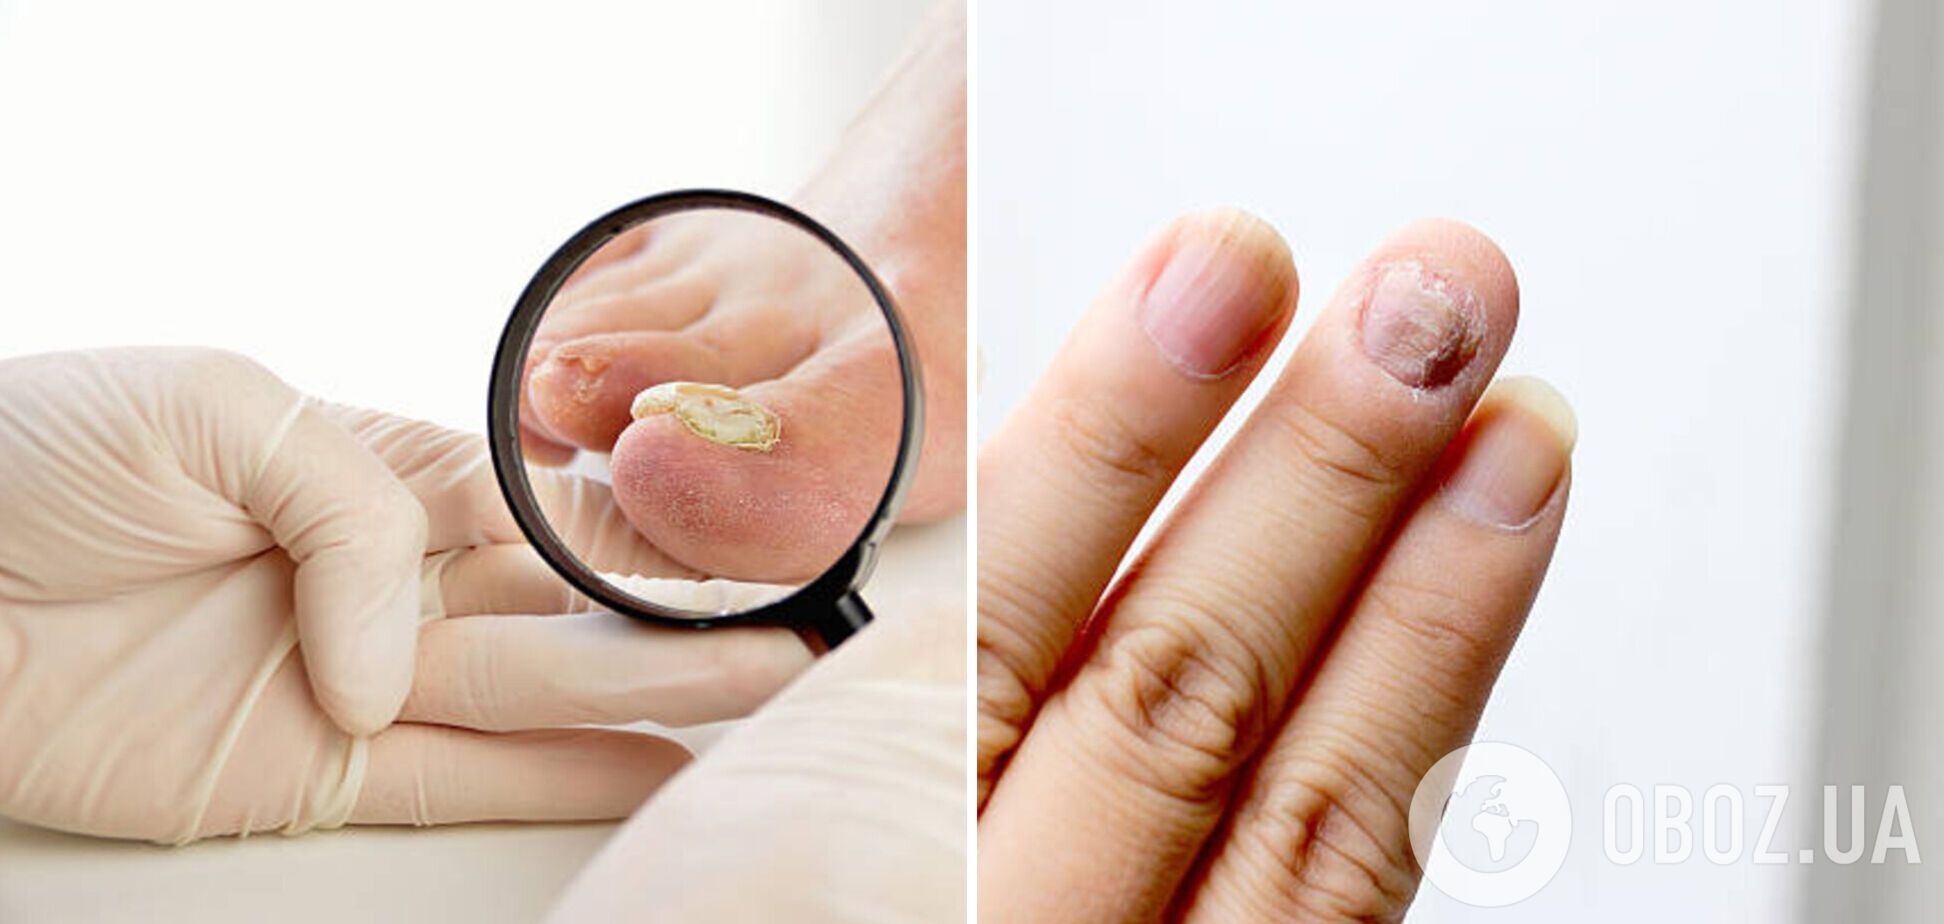 Специалисты рассказали, о чем может свидетельствовать вид ваших ногтей